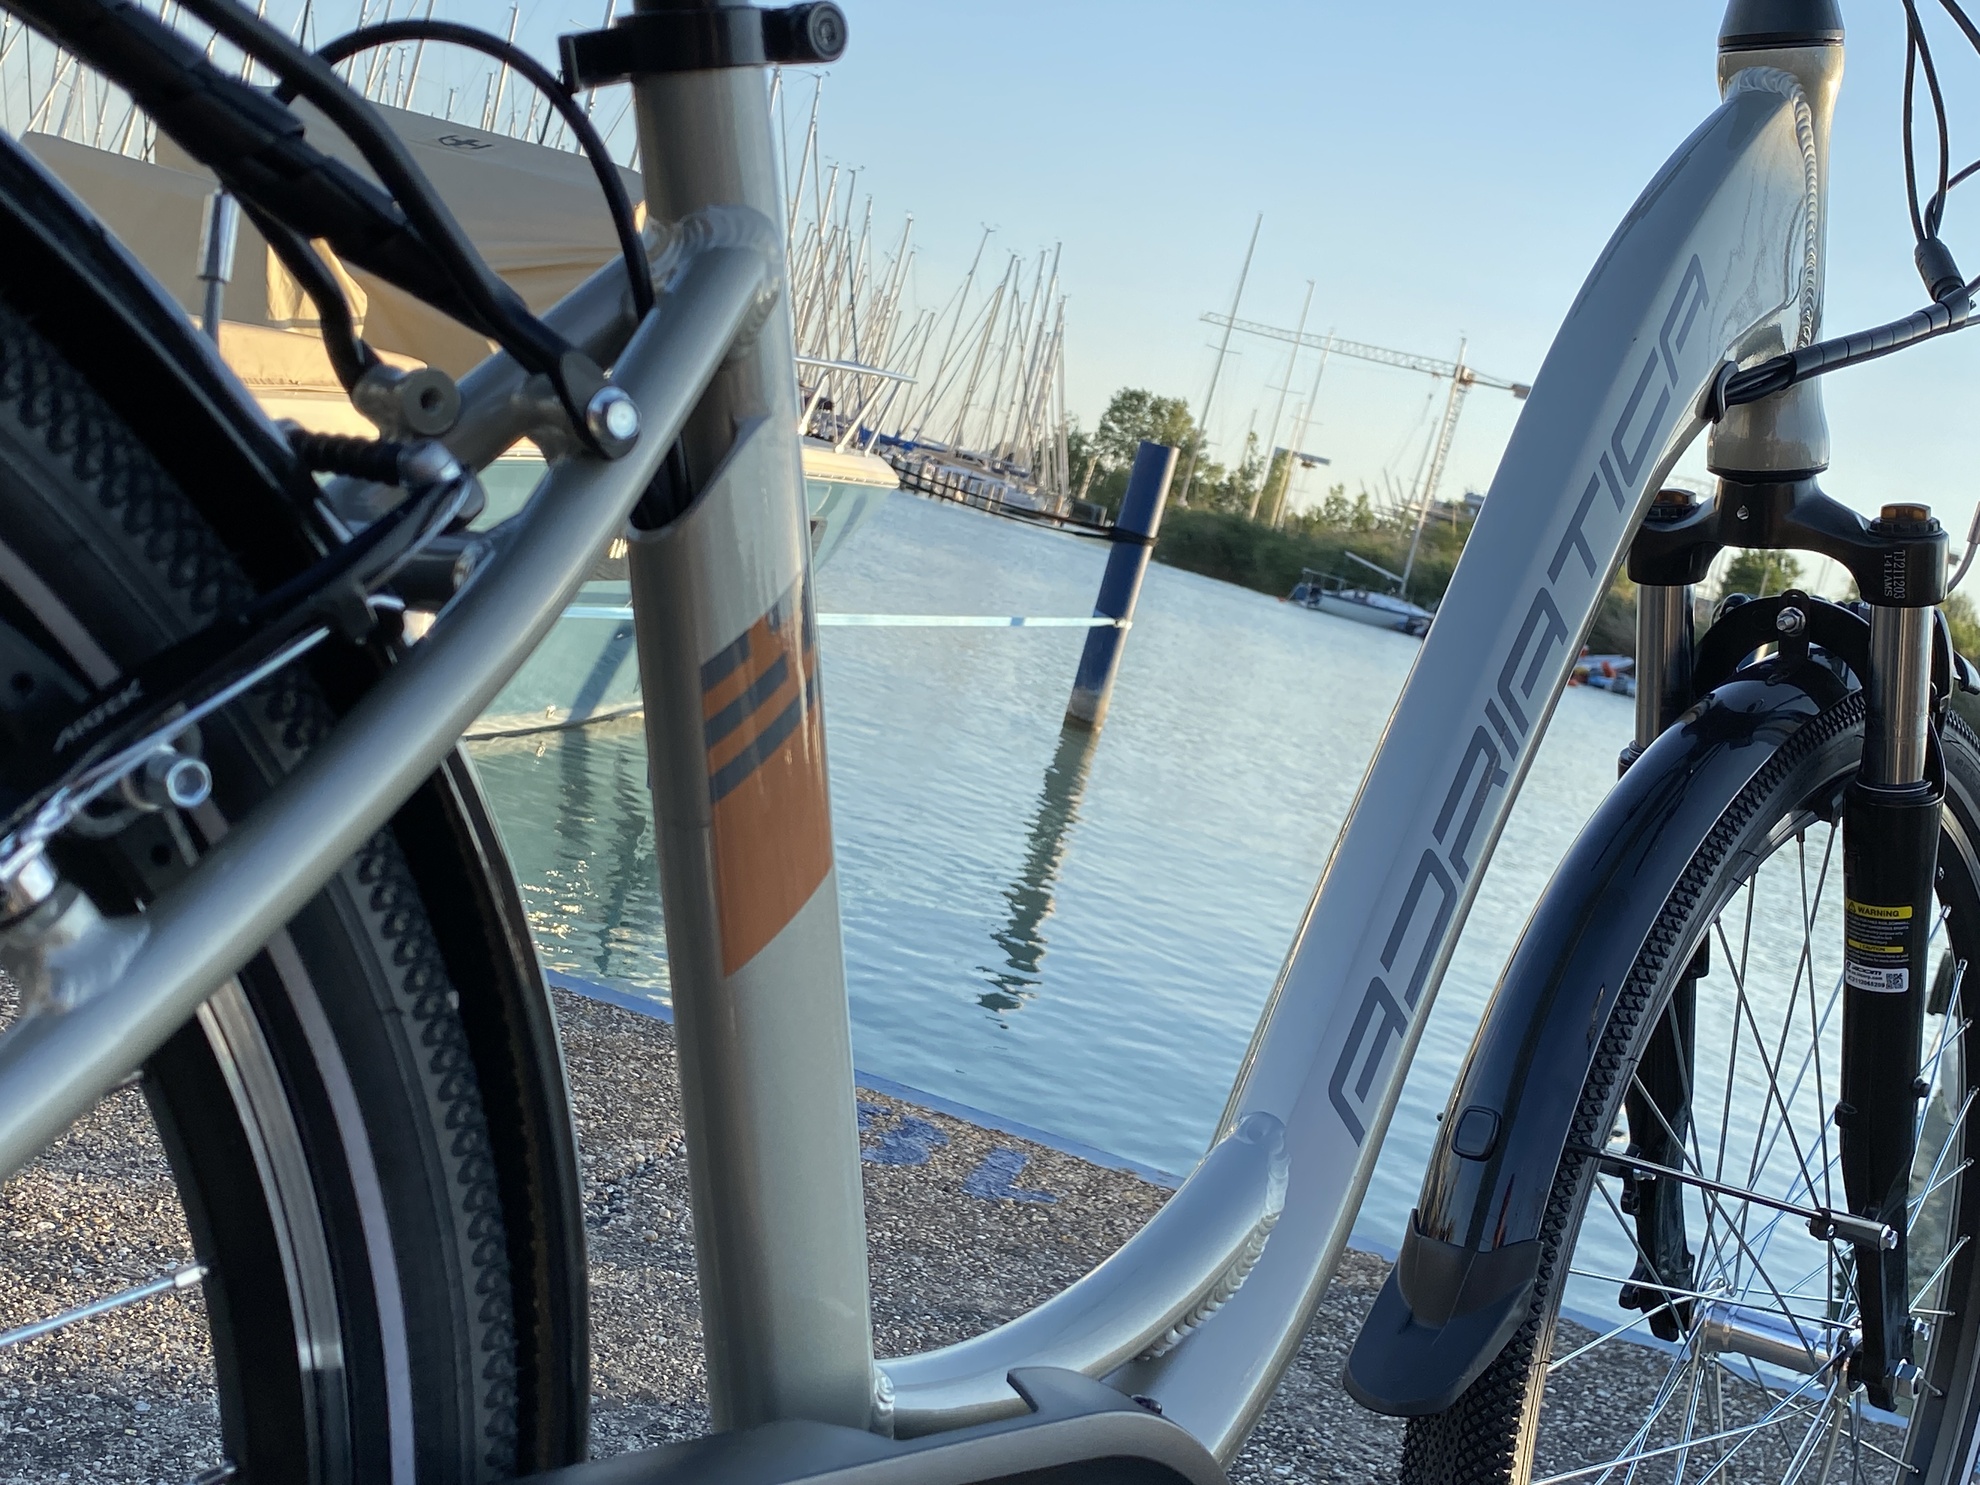 Ennyi valóban elég a boldogsághoz? Adriatica E1 elektromos kerékpár teszt-5